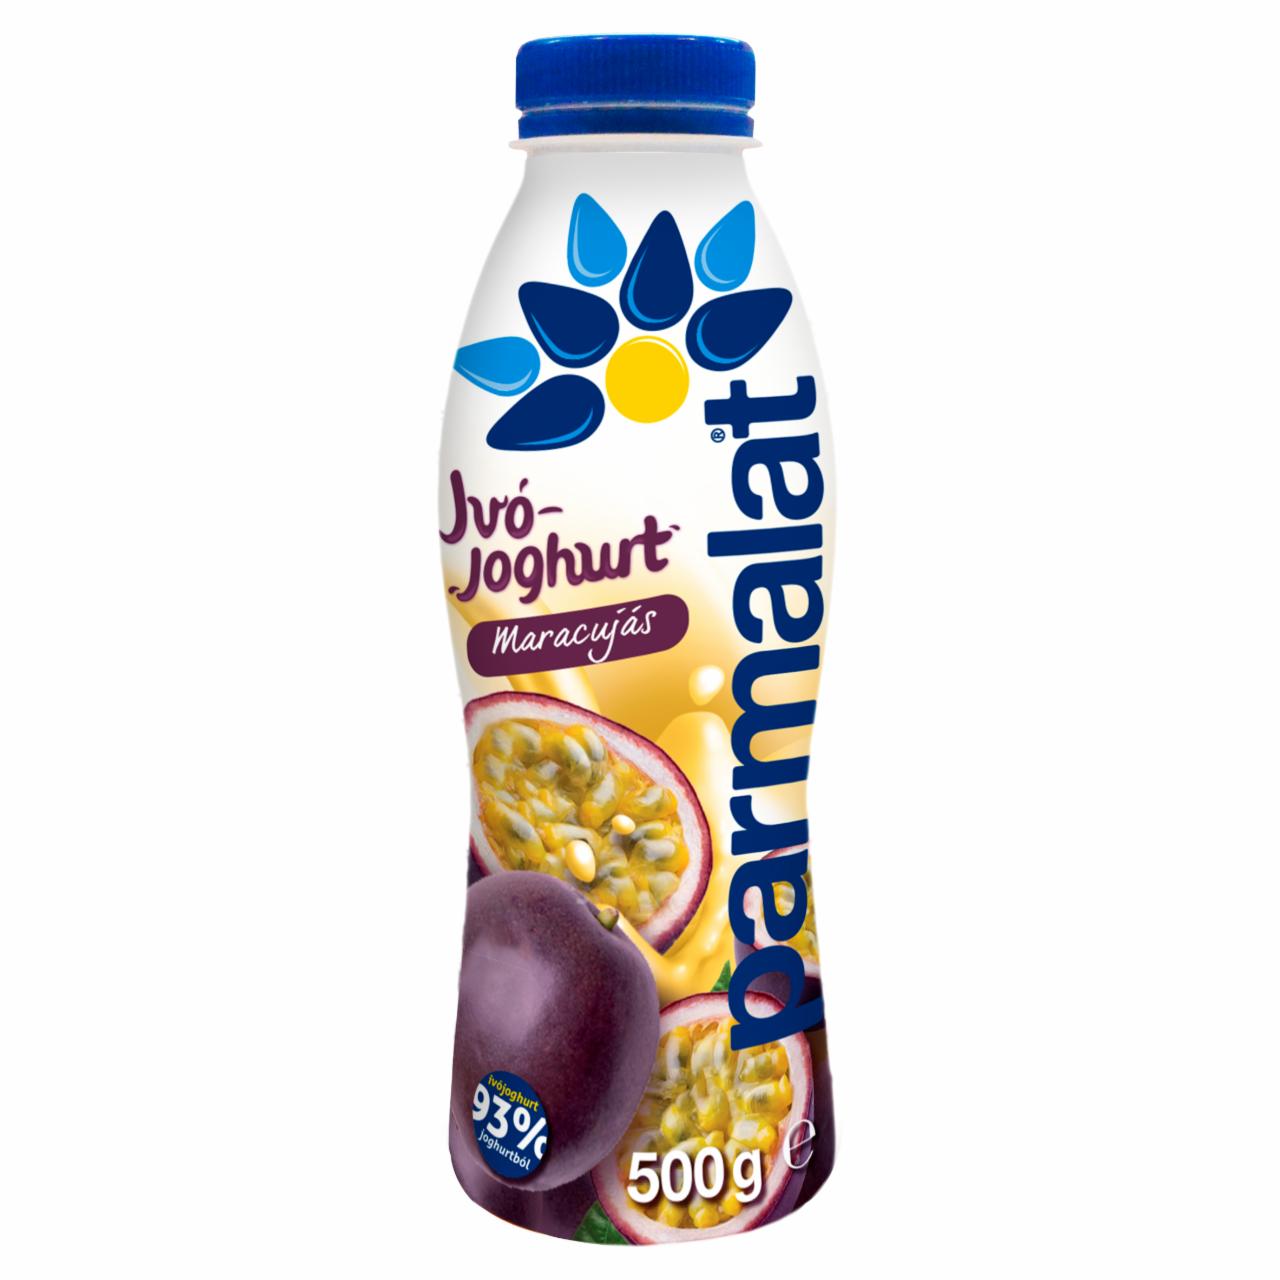 Képek - Parmalat zsírszegény maracujás ivójoghurt 500 g